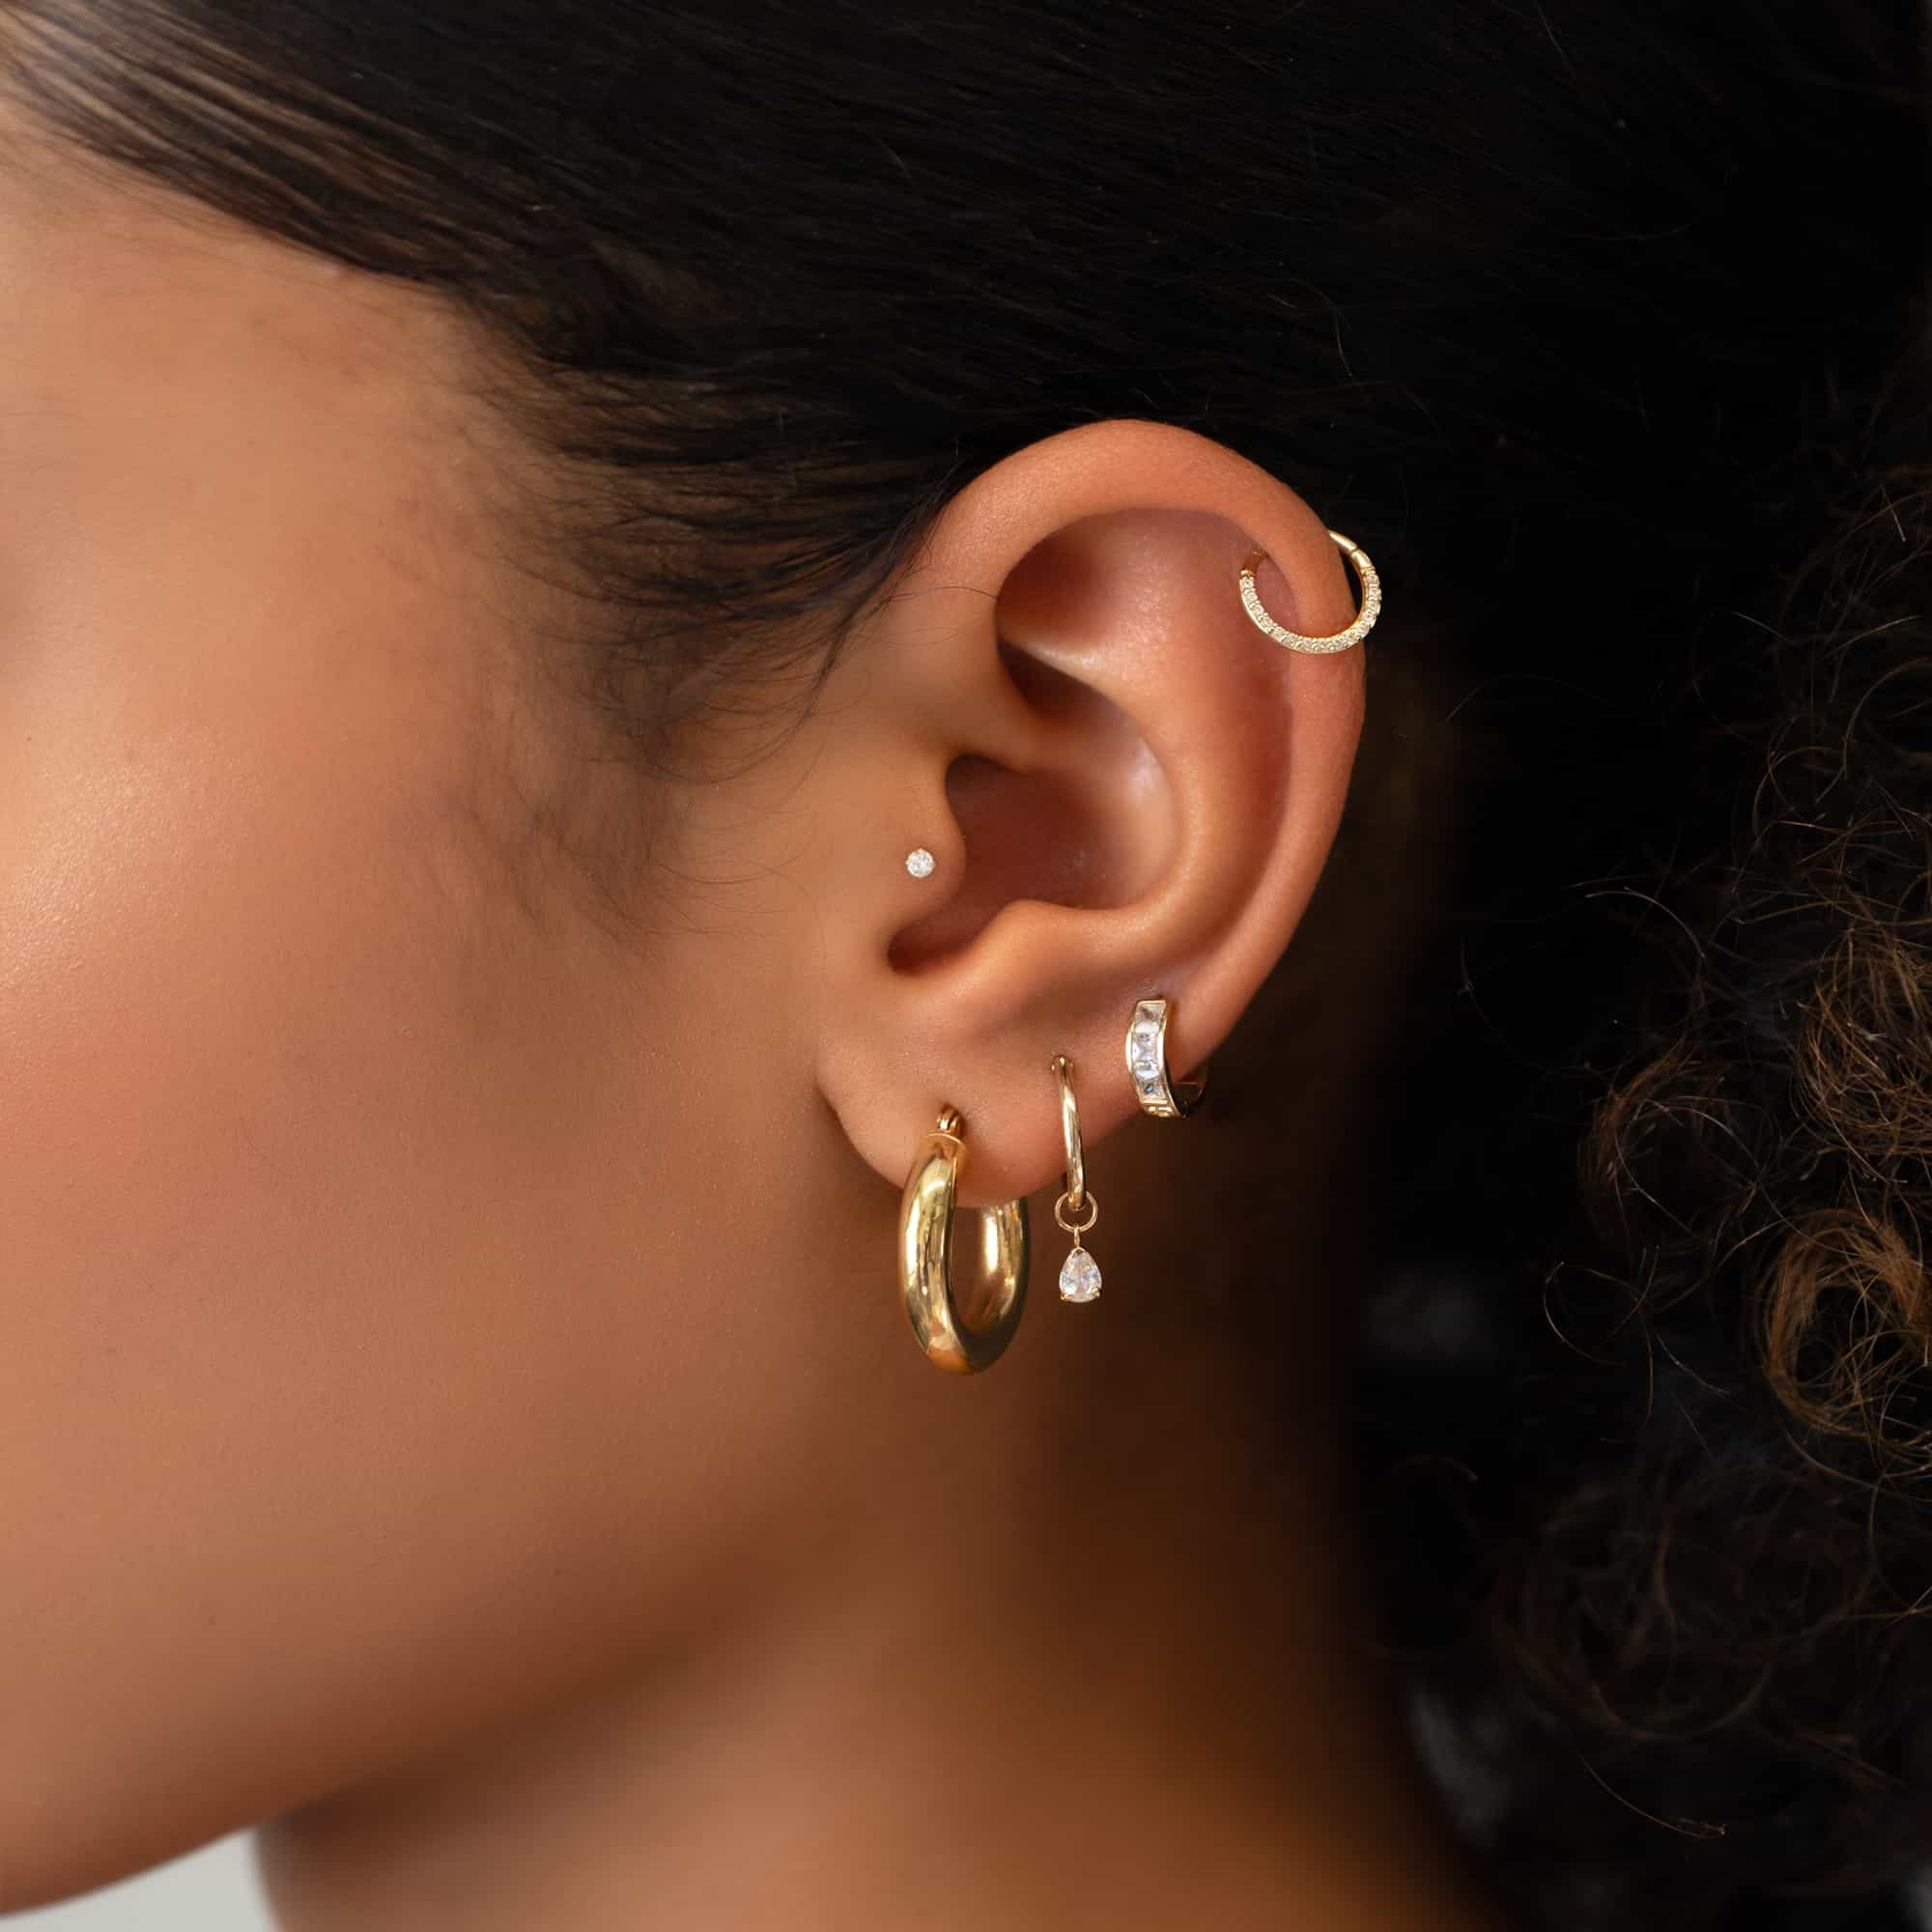 Buy Ear Cuff Earrings 14K Solid Gold, Flat Ear Cuff, Ear Wrap No Piercing,  Thick Cartilage Earrings, Minimalist Ear Cuffs Online in India - Etsy